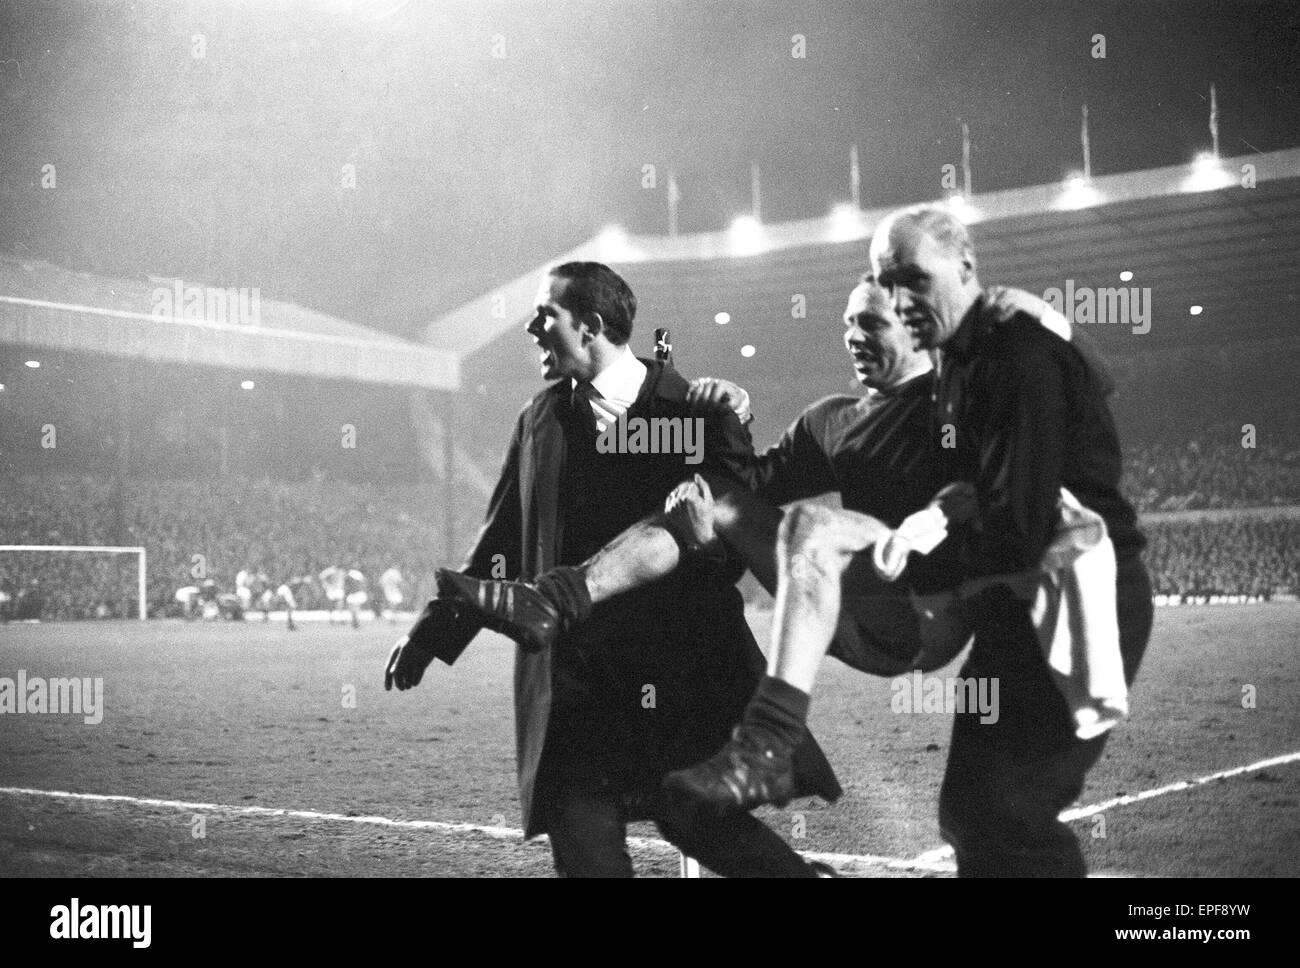 Il Manchester United v Manchester City, league match at Old Trafford, mercoledì 27 marzo 1968. Punteggio finale: Man Utd 1-3 uomo città. Foto Stock